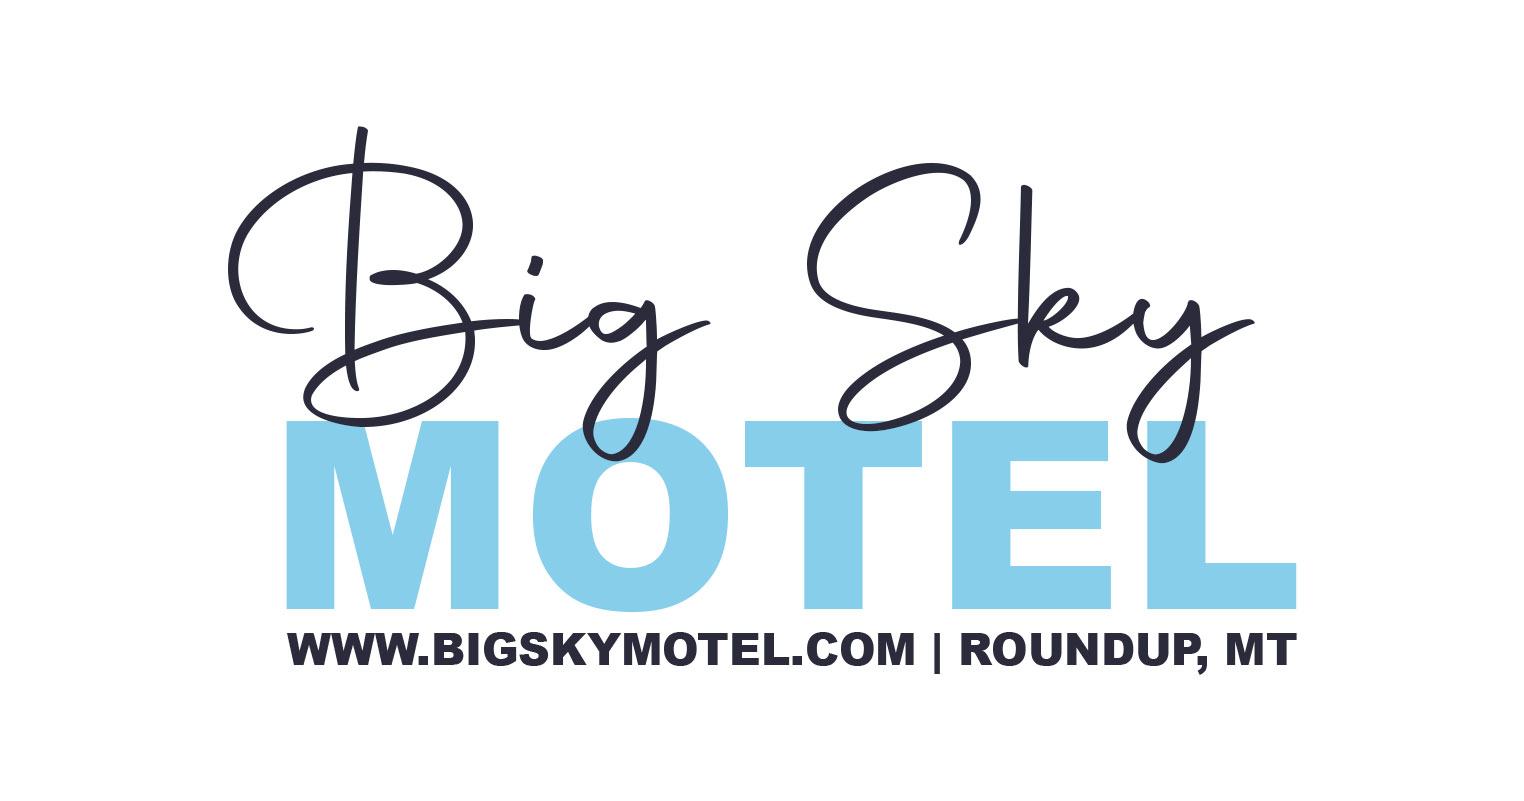 Big Sky Motel